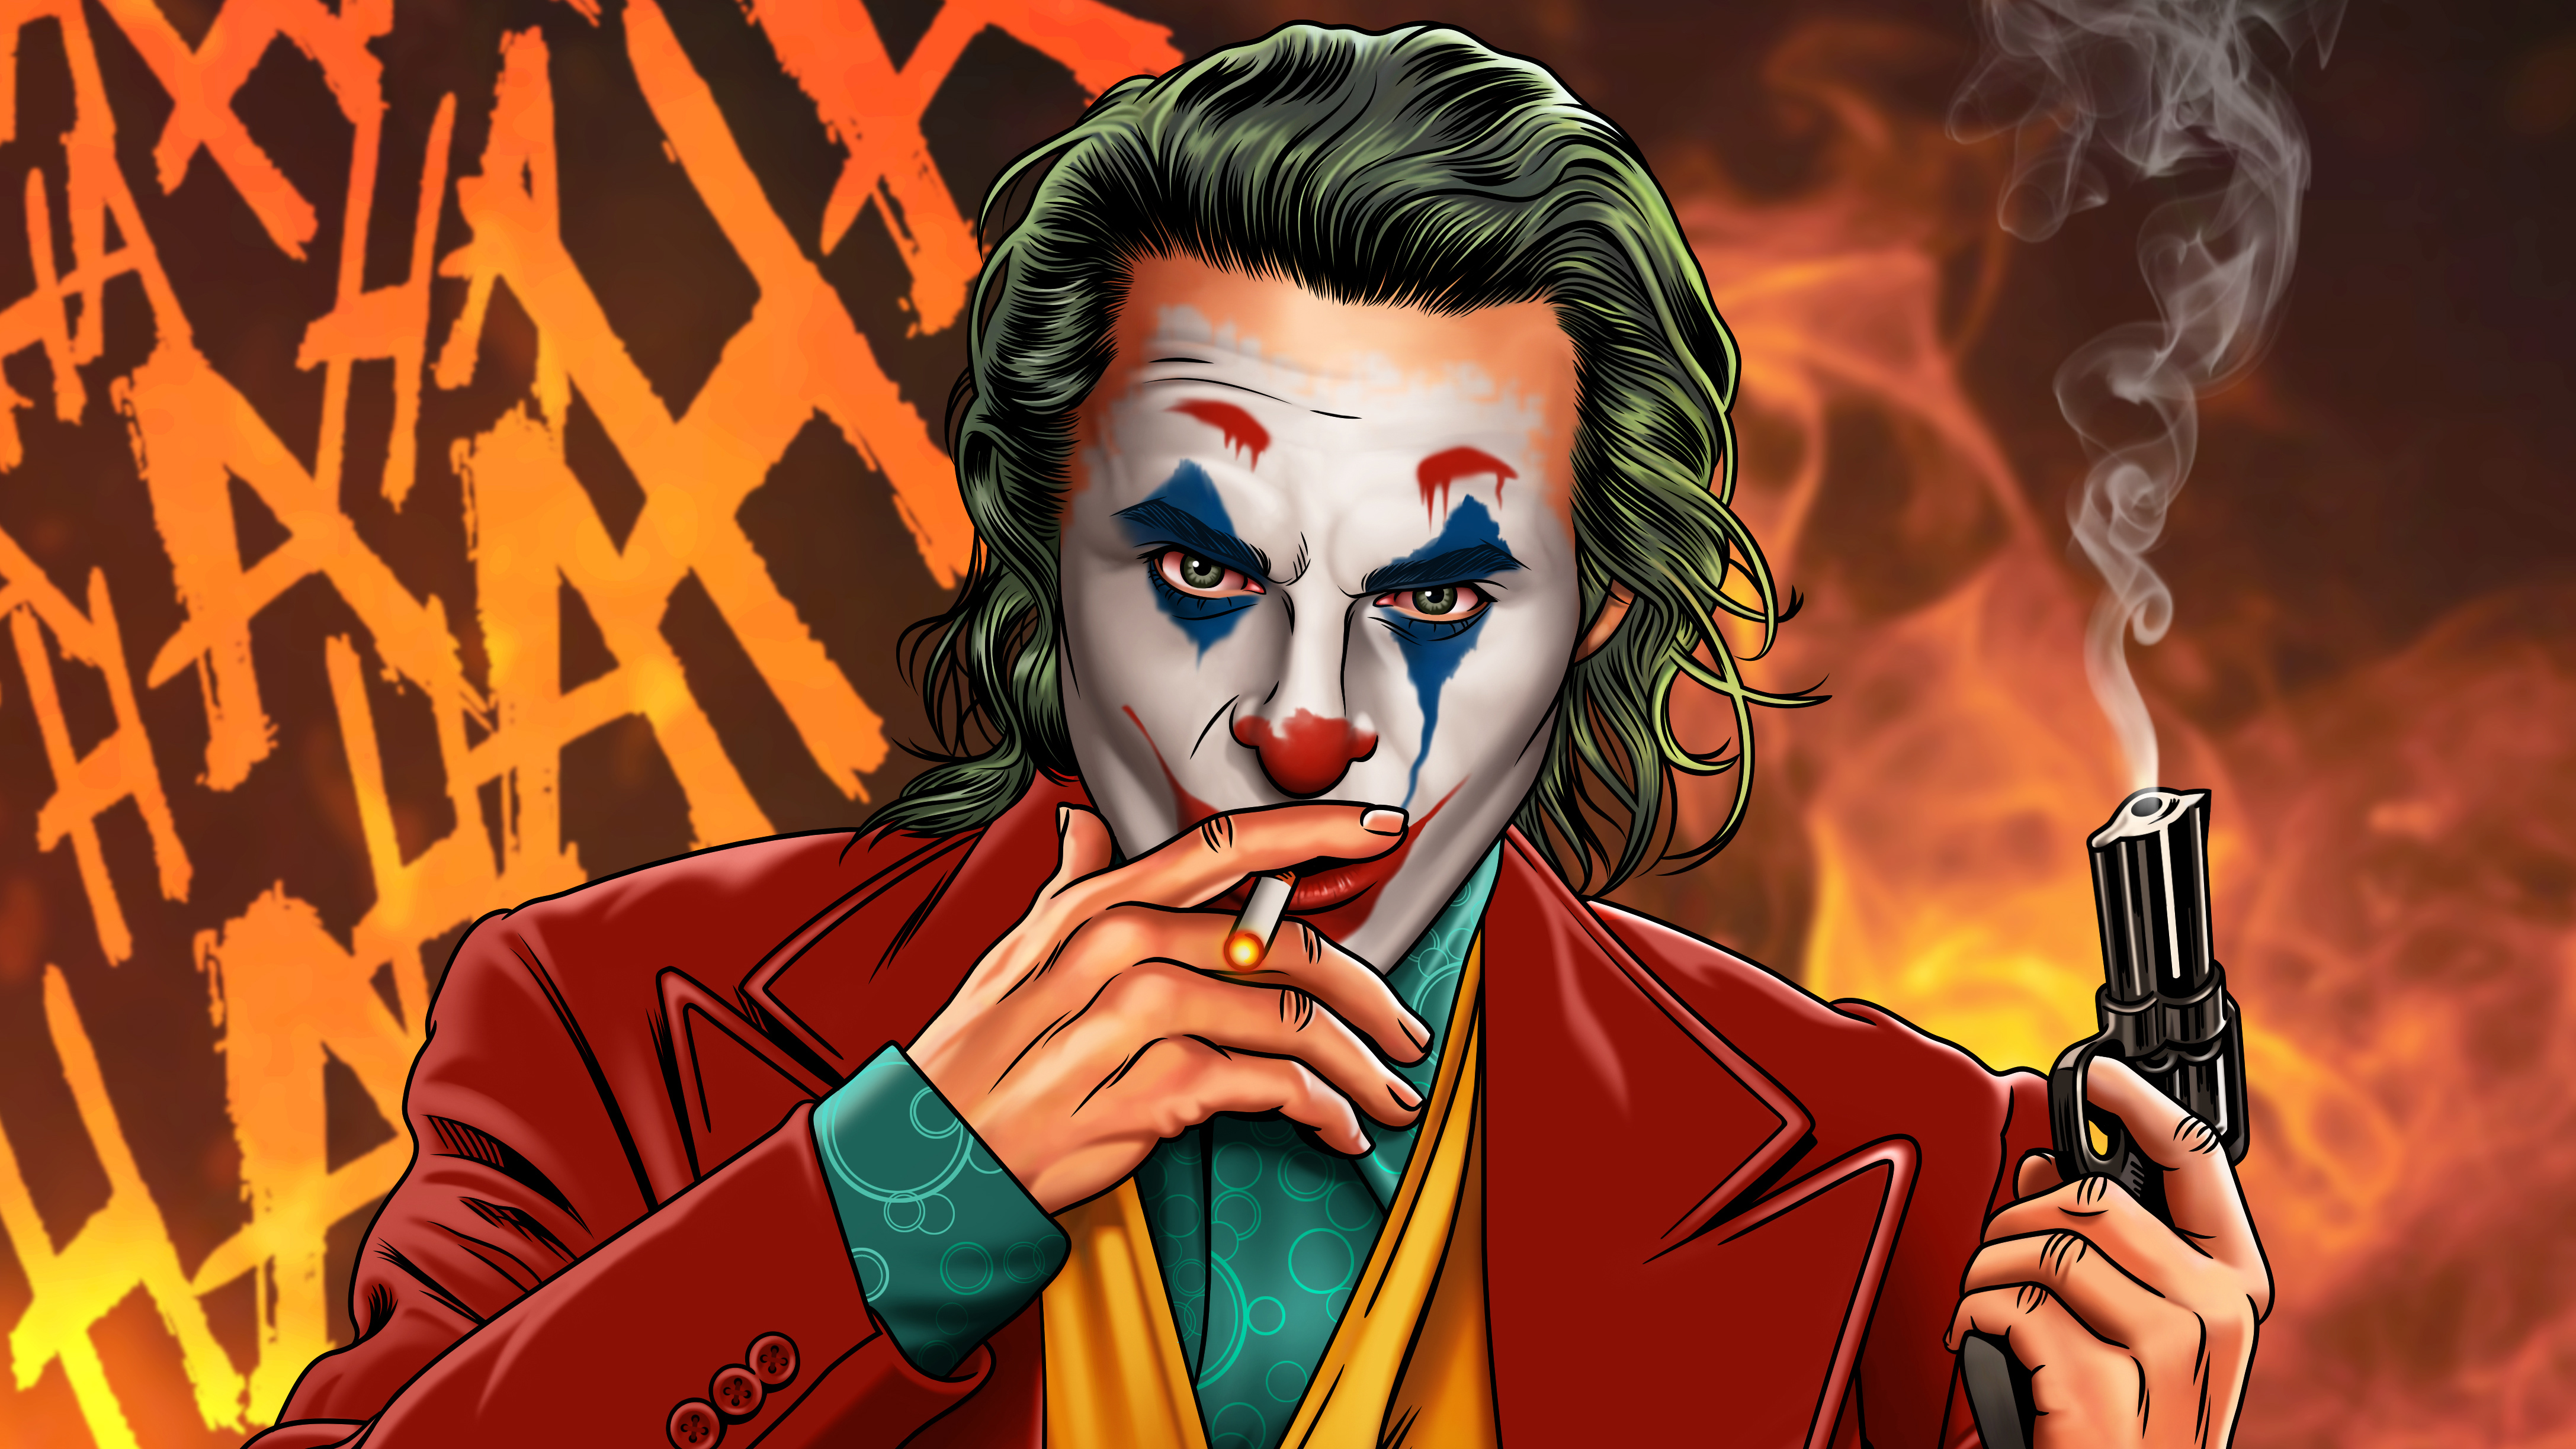  Joker  4k Ultra HD Wallpaper  Background Image 4349x2447